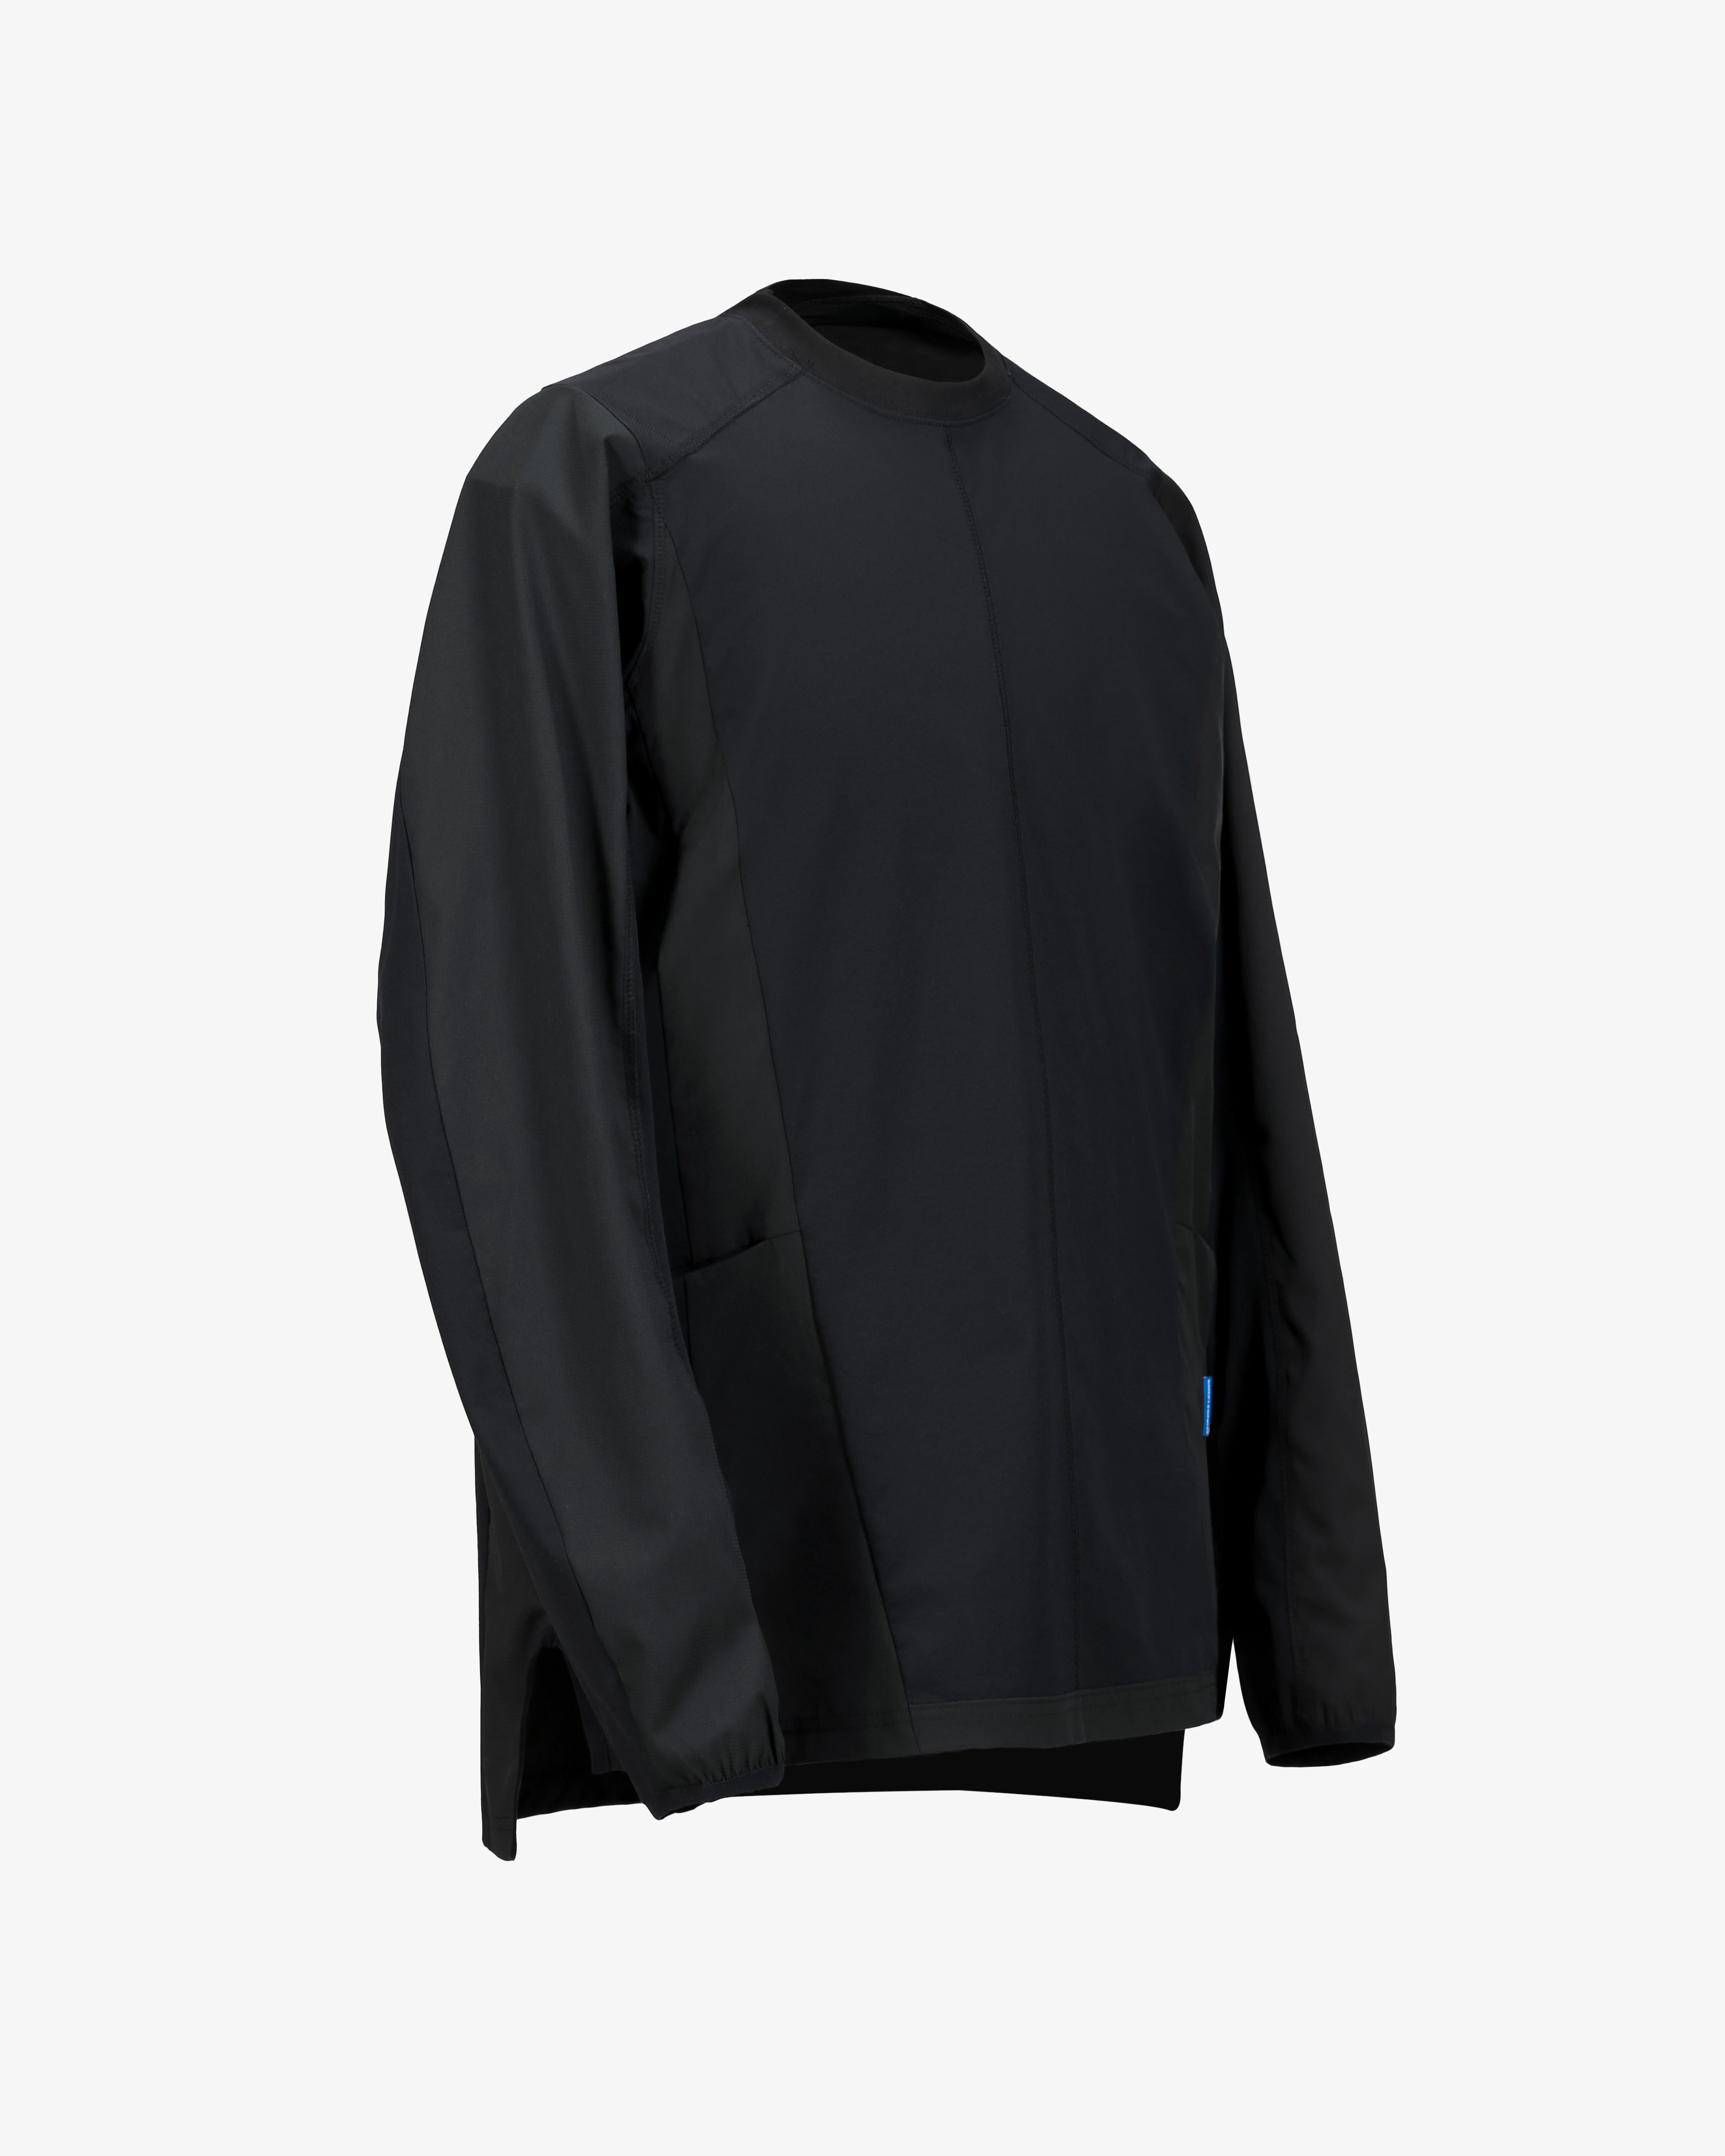 187 Quick Drying Long Sleeve Shirt Black